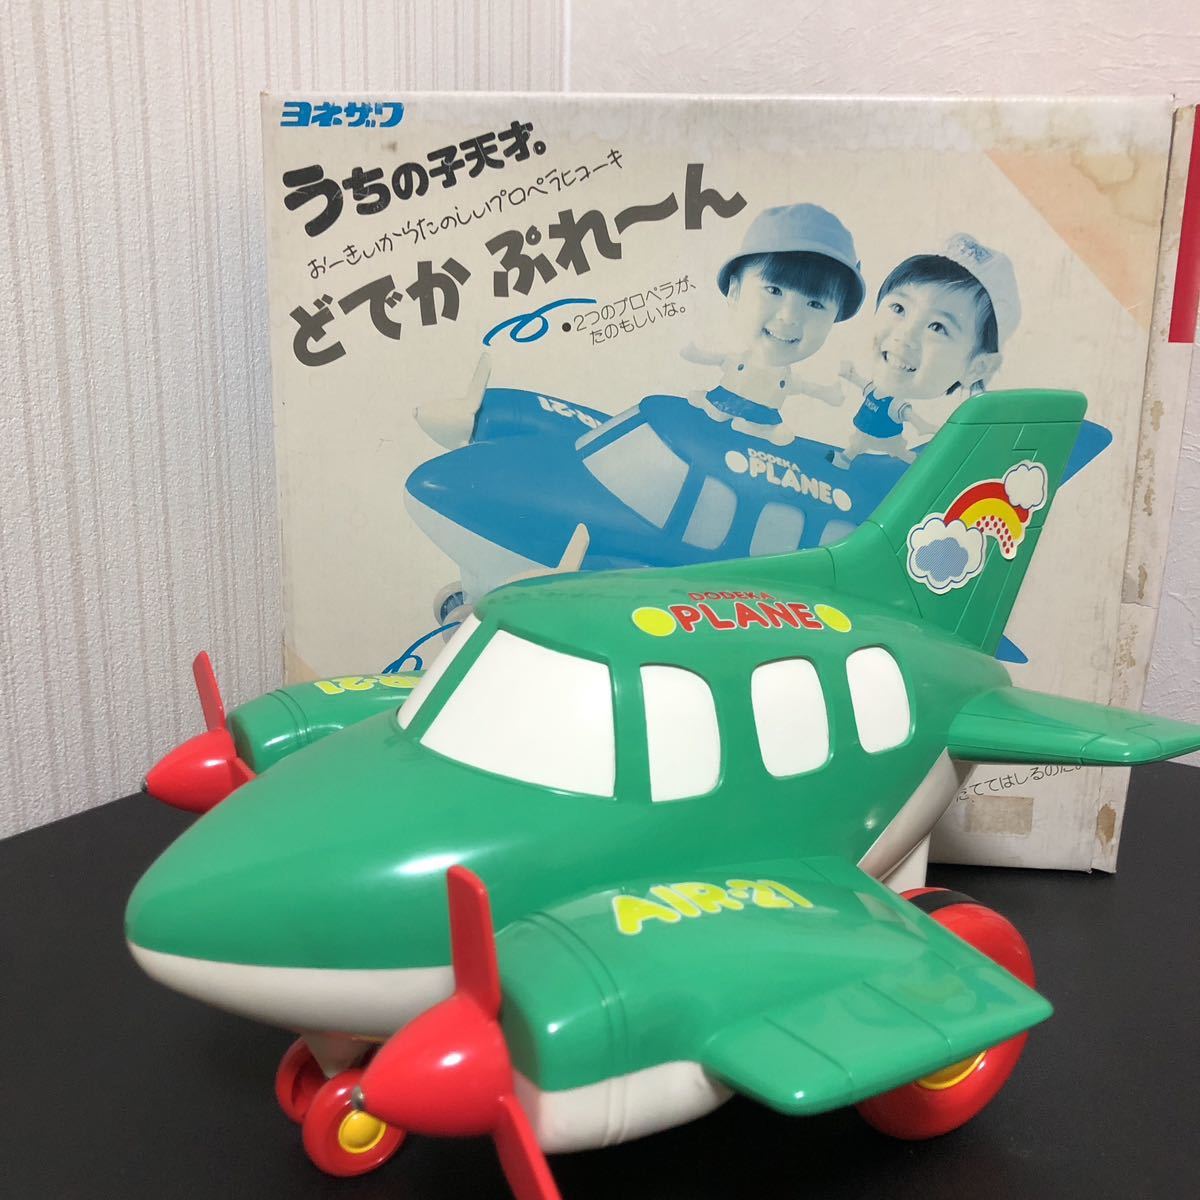 ◎うちの子天才。 どでかぷれーん ヨネザワ 飛行機 知育玩具 レトロ 玩具 おもちゃ 日本製 1987年_画像1